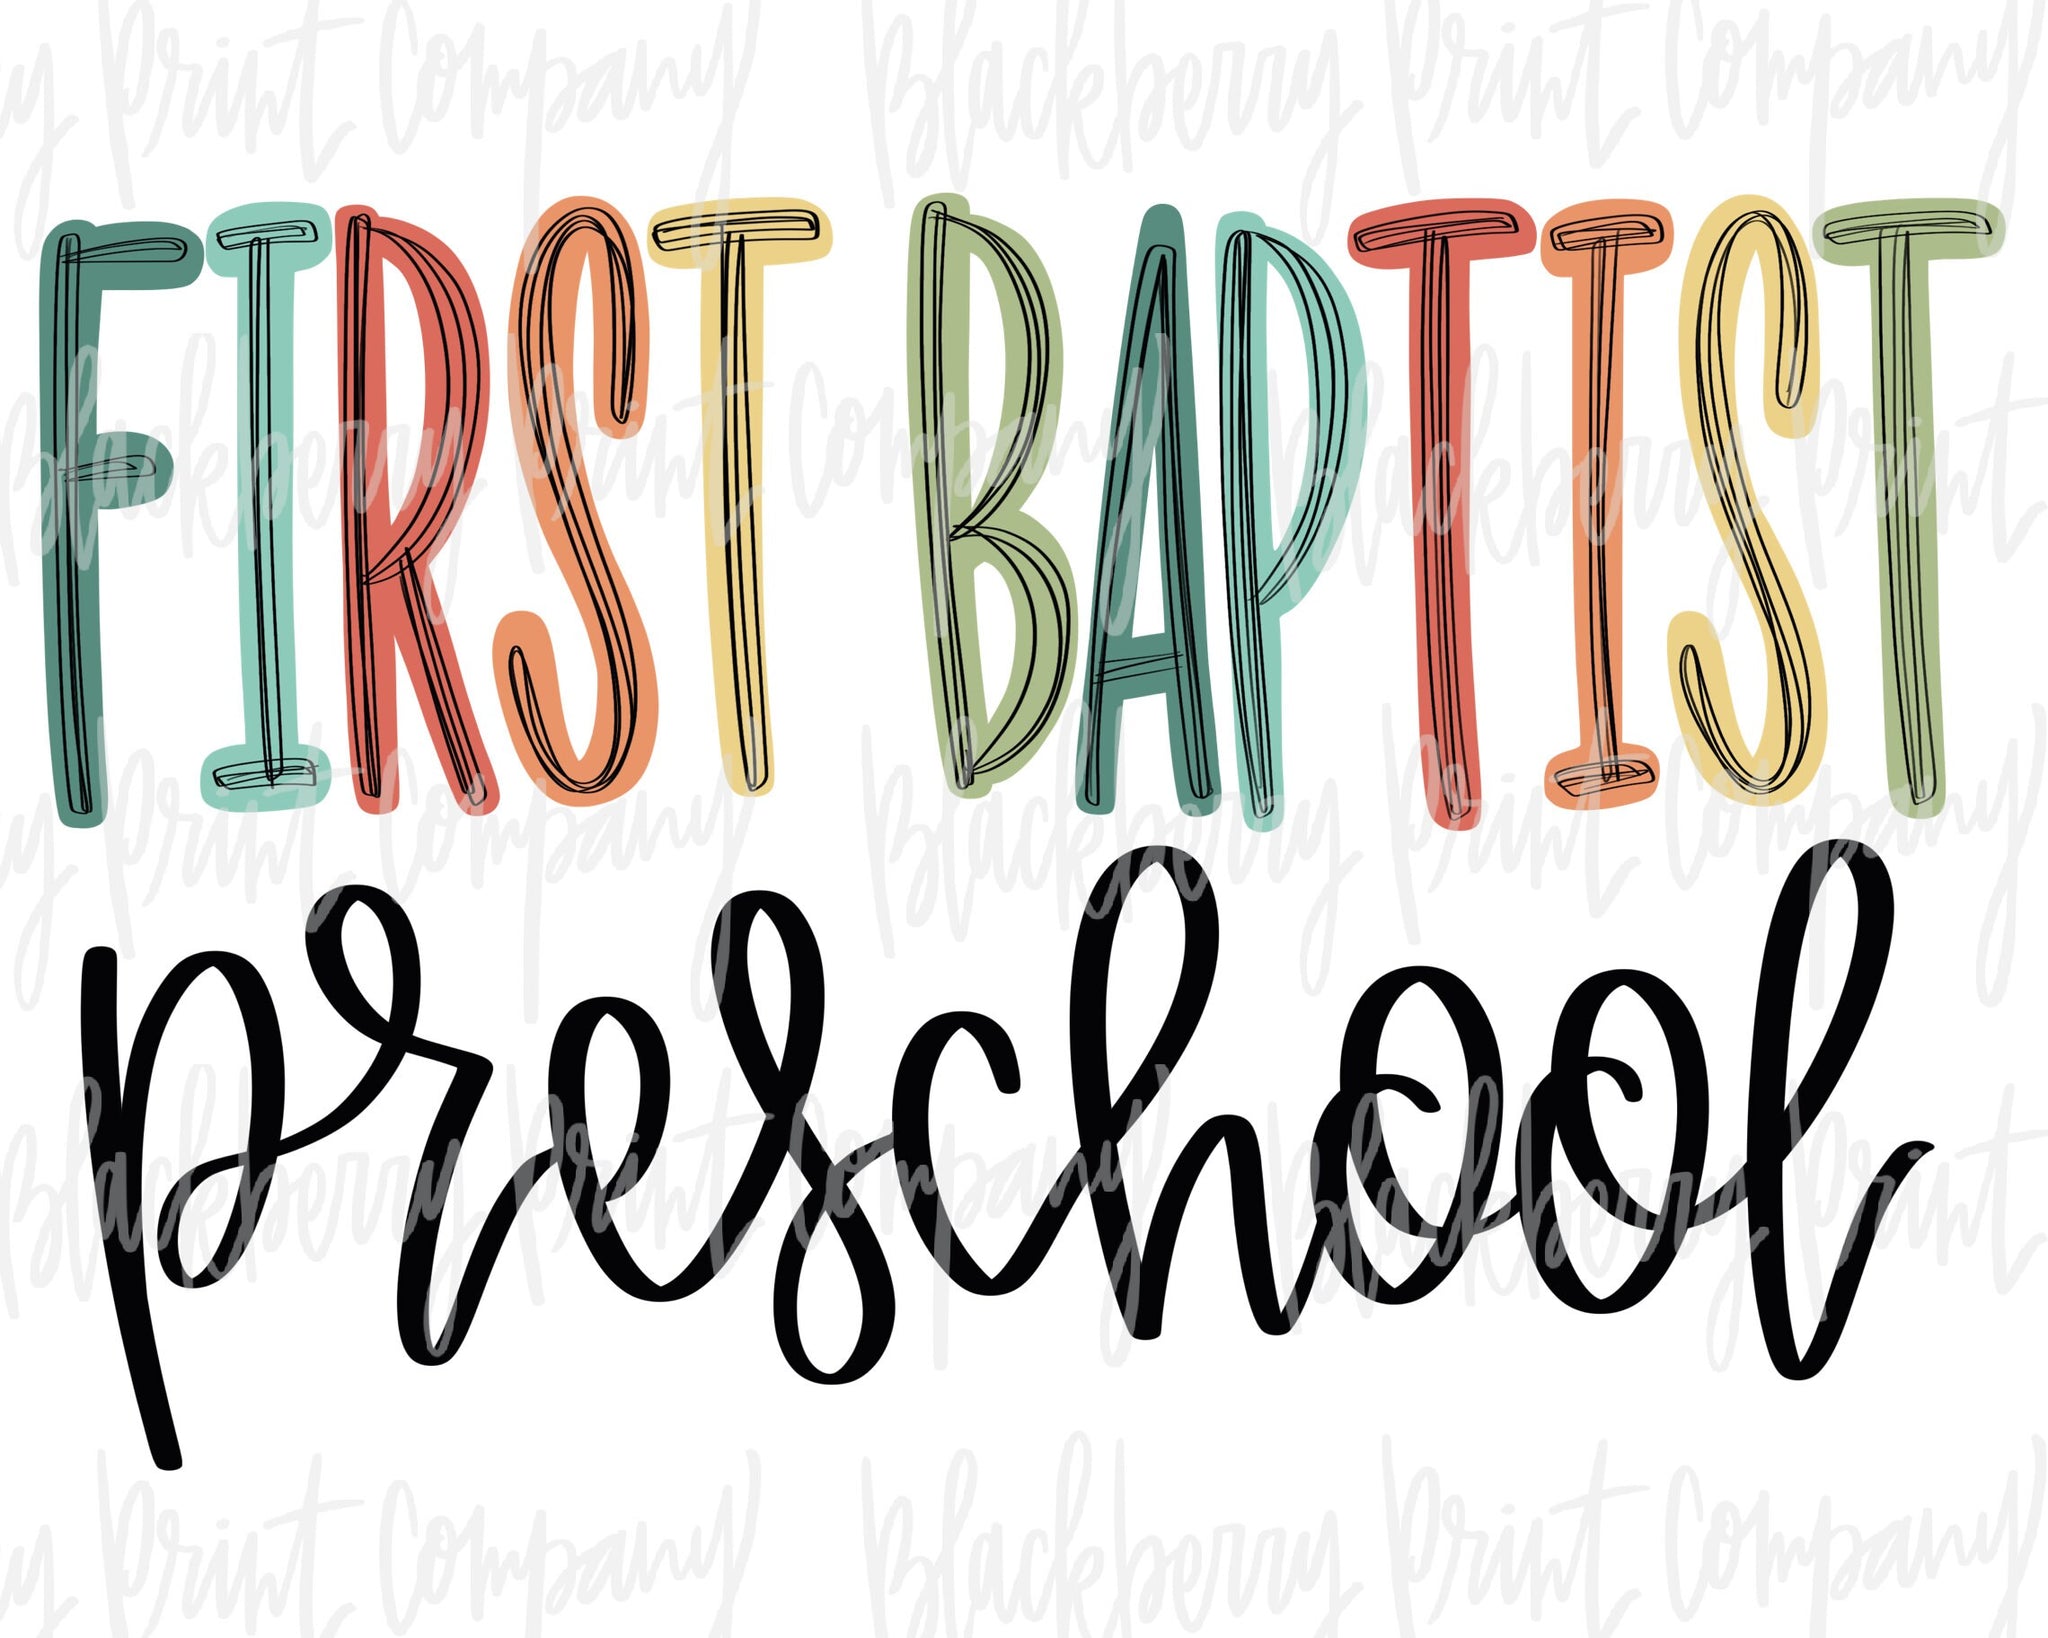 DTF Transfer First Baptist Preschool